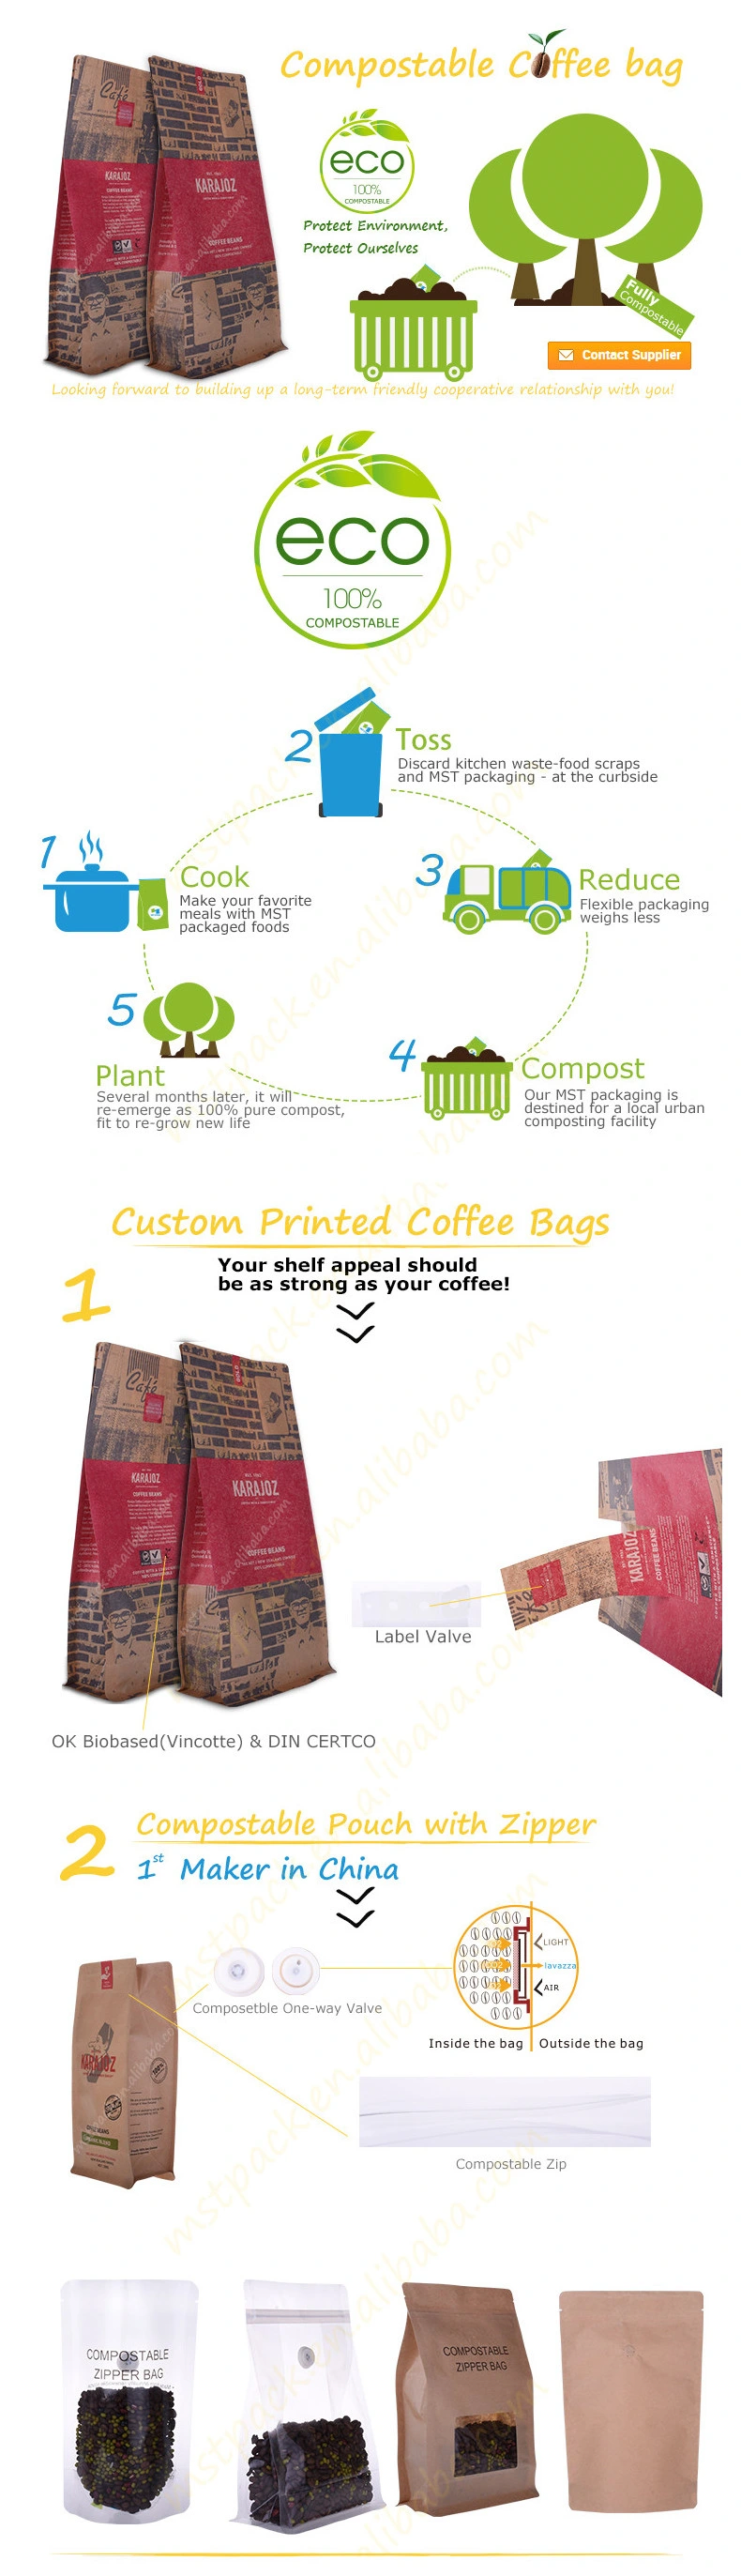 Printed Square Bottom Compostable Coffee & Tea Bag